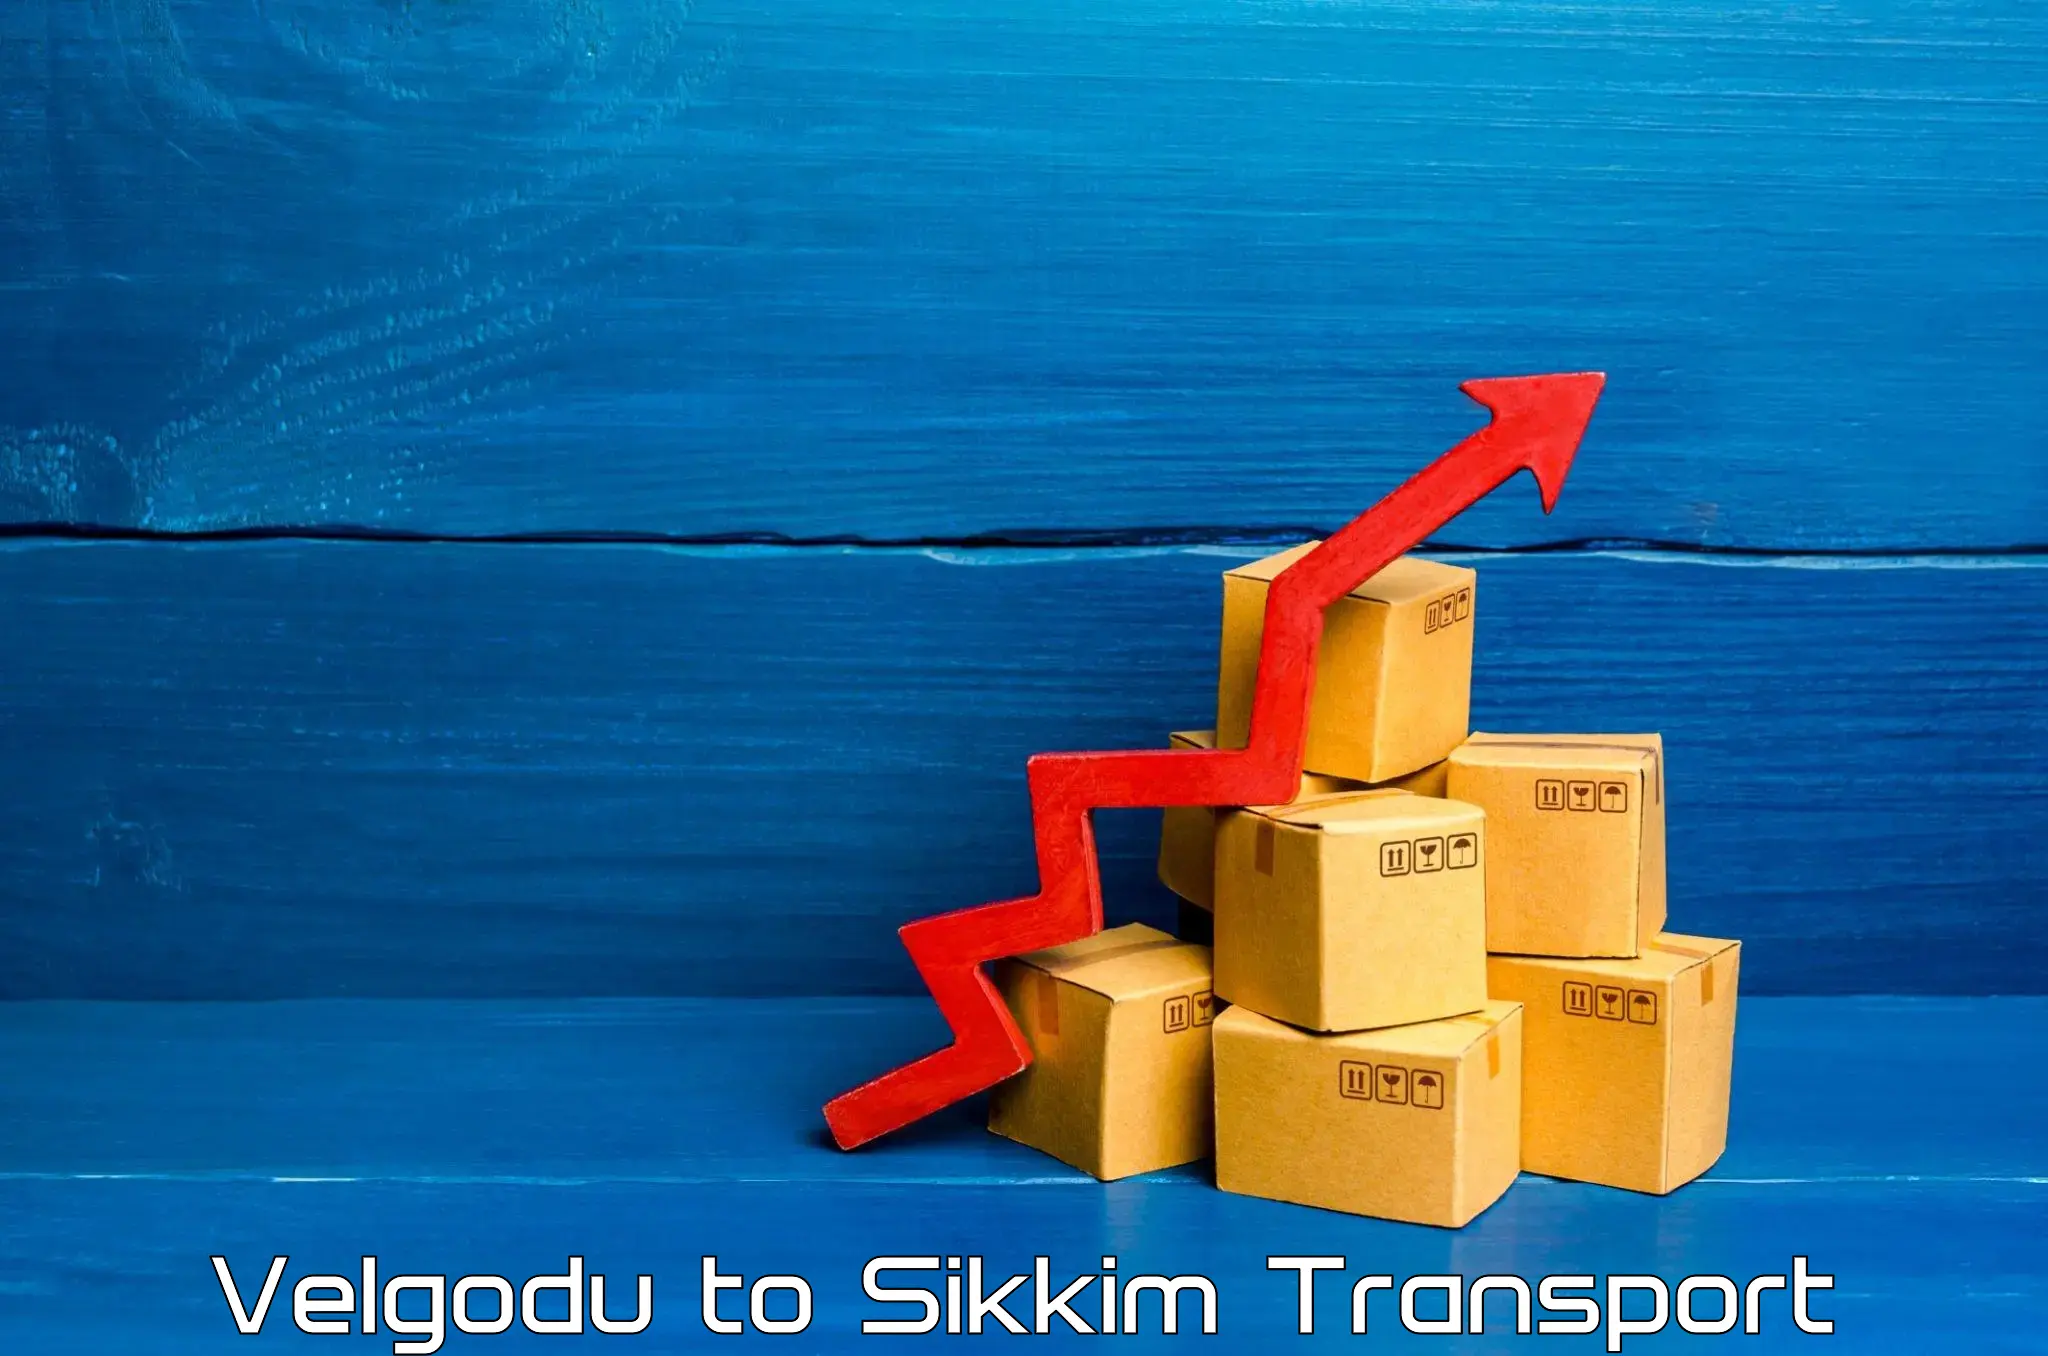 Commercial transport service Velgodu to East Sikkim